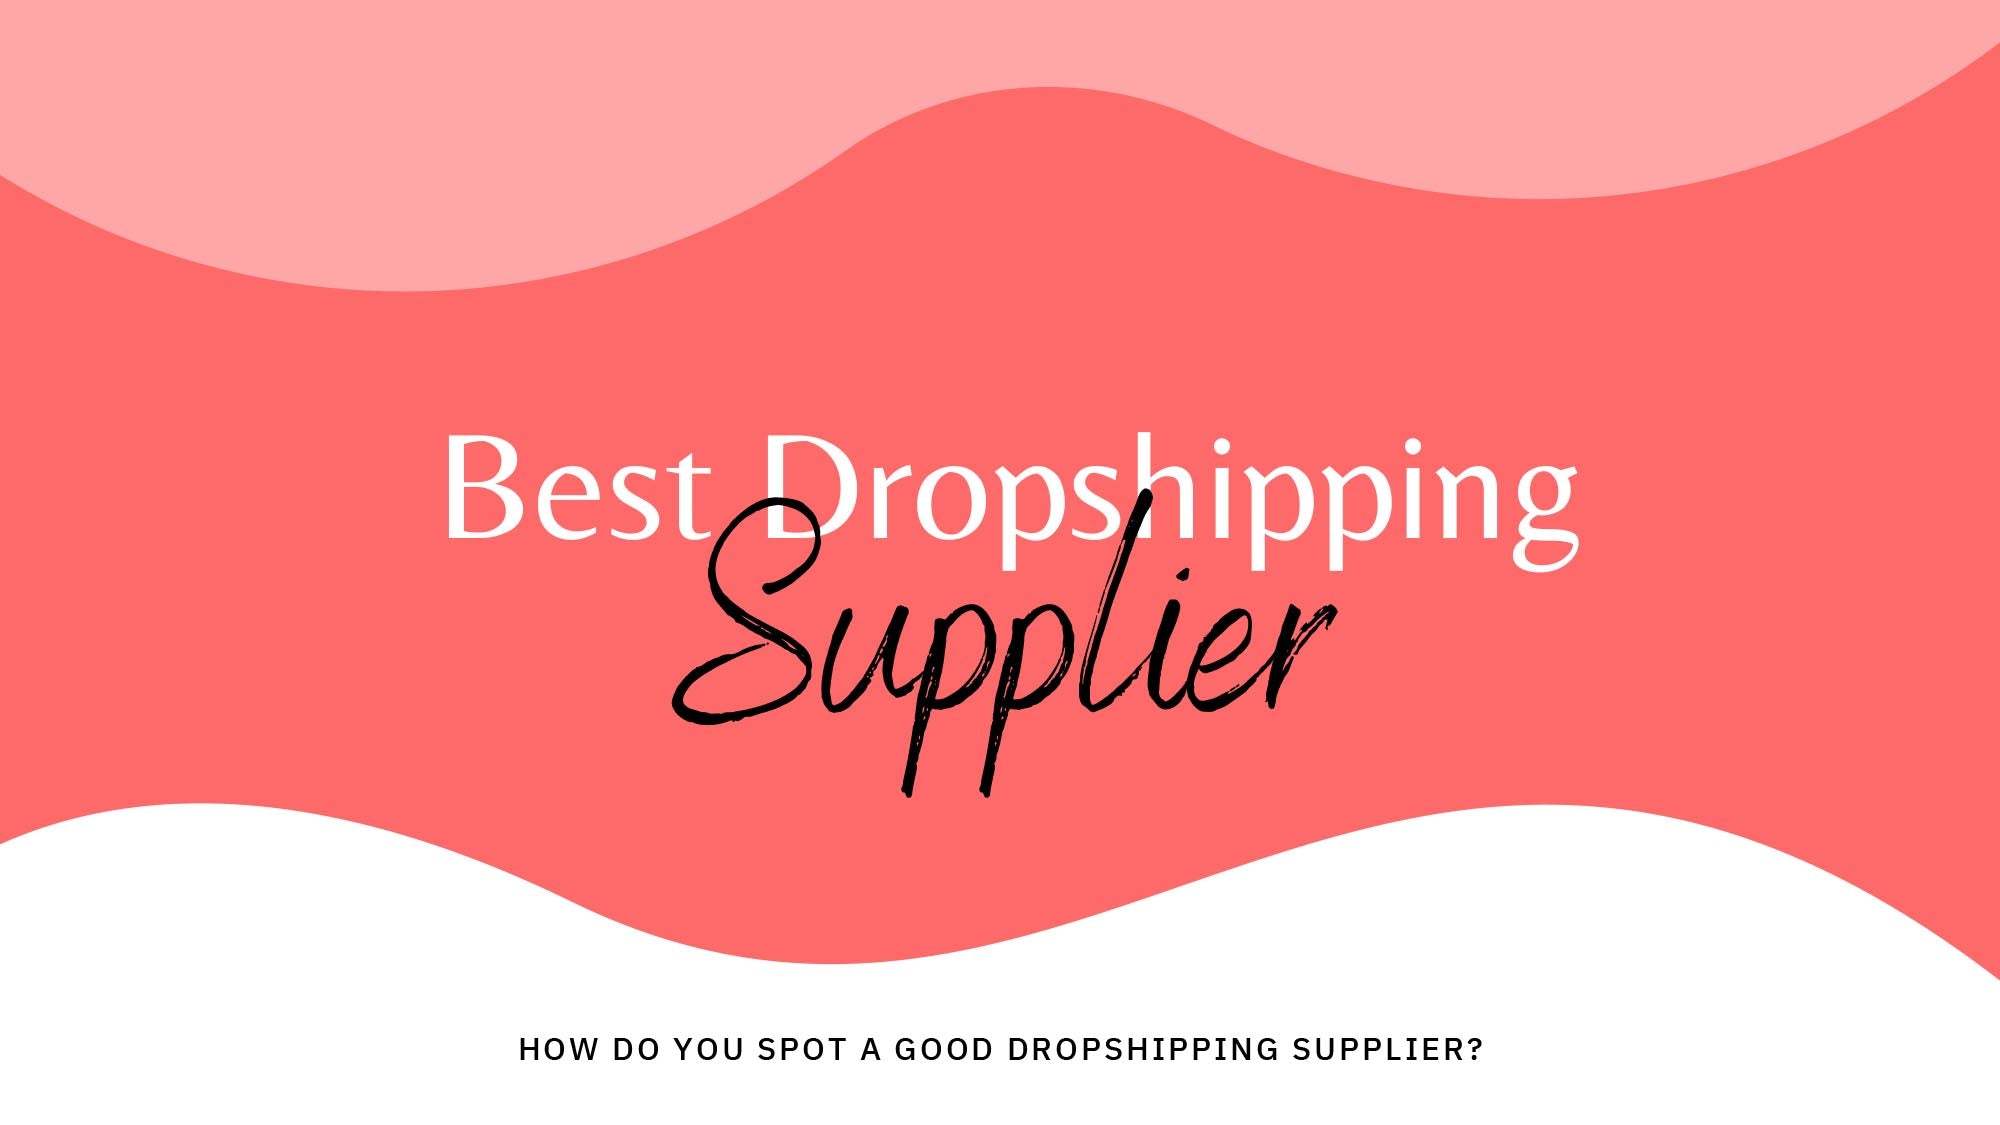 How Do You Spot a Good Dropshipping Supplier?